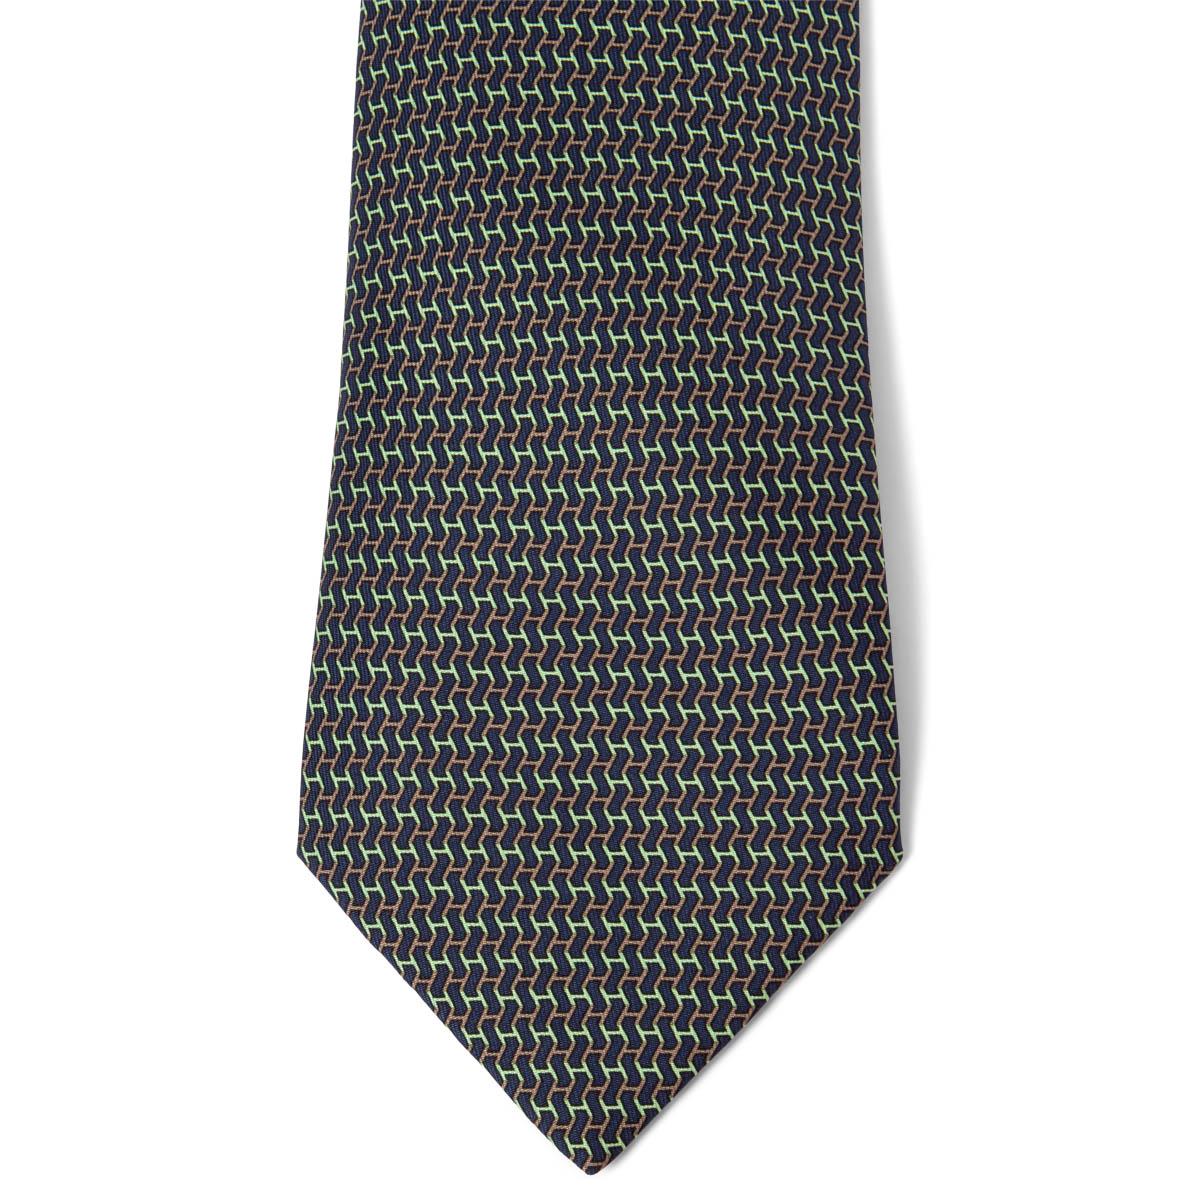 100% authentiques cravates Hermès H en Ombre en twill de soie noir, vert et marron (100%). A été porté et est en excellent état. Pas de boîte.

Mesures
Modèle	5503
Longueur	156cm (60.8in)
Point le plus large	9cm (3.54in)

Toutes nos annonces